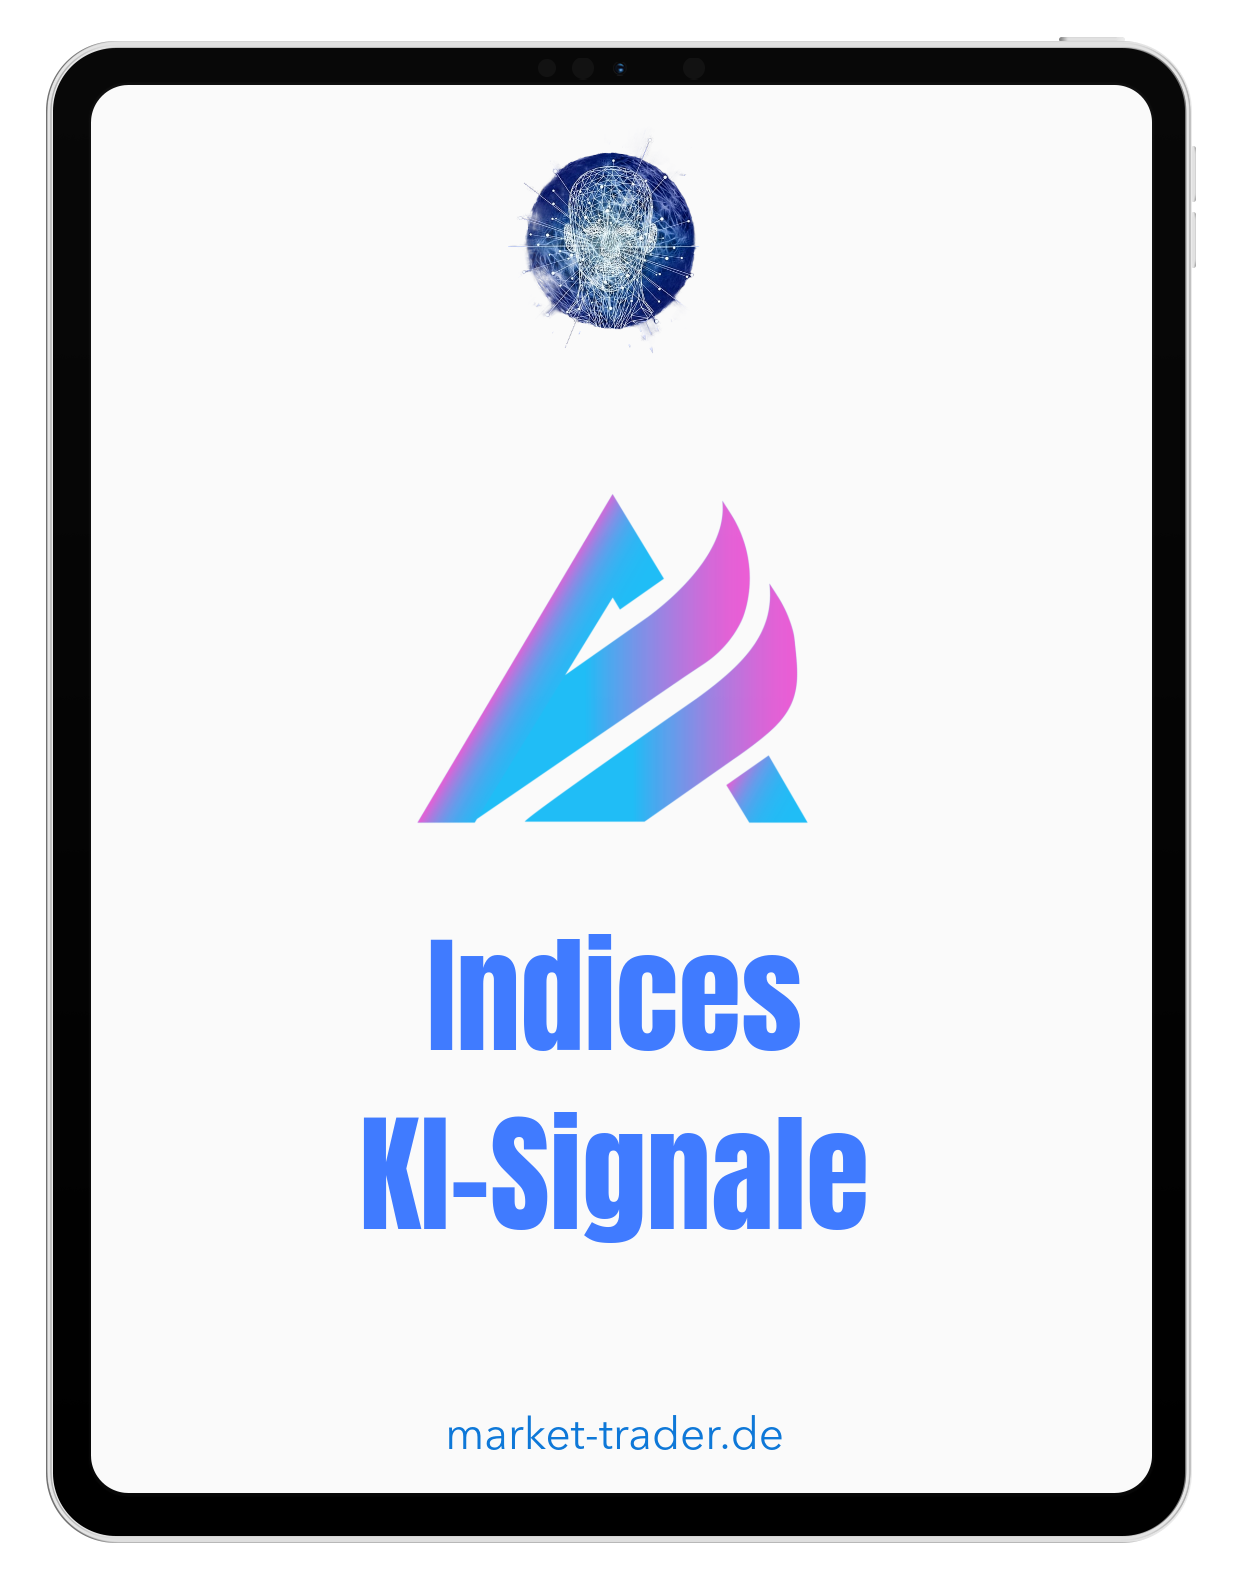 Indices KI-Signale